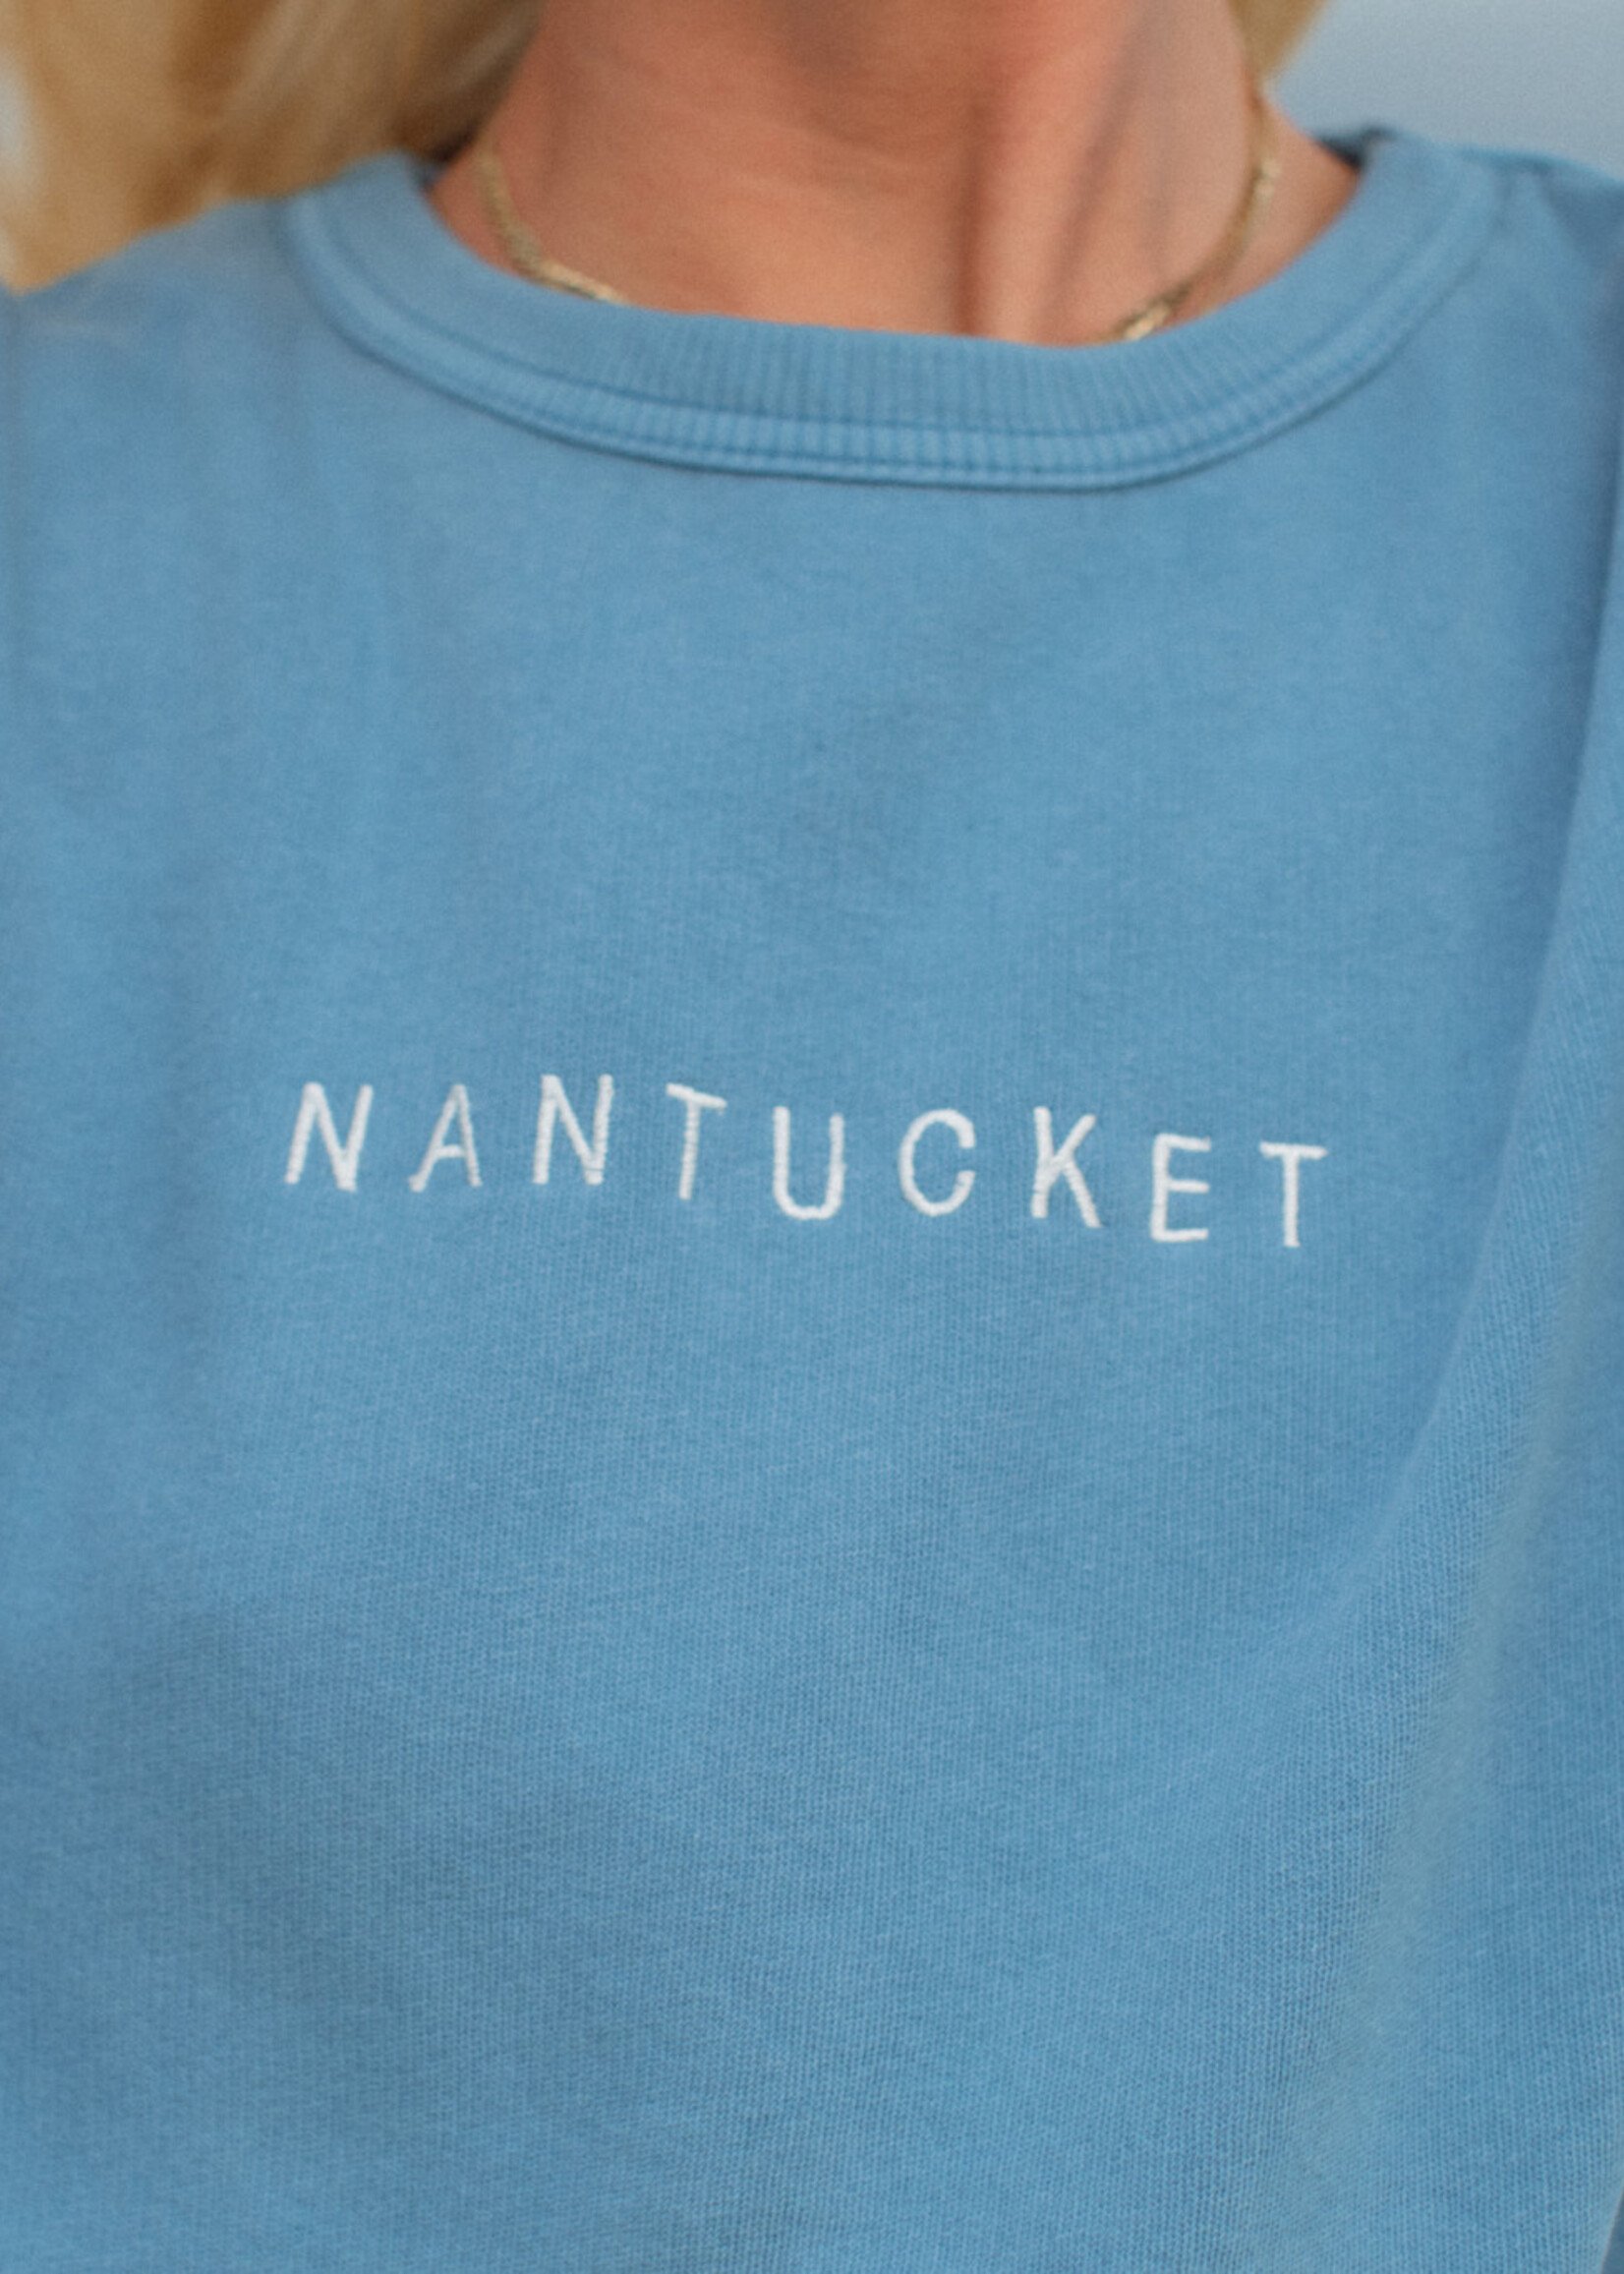 Austins Austins Unisex Crew Neck Straight Nantucket